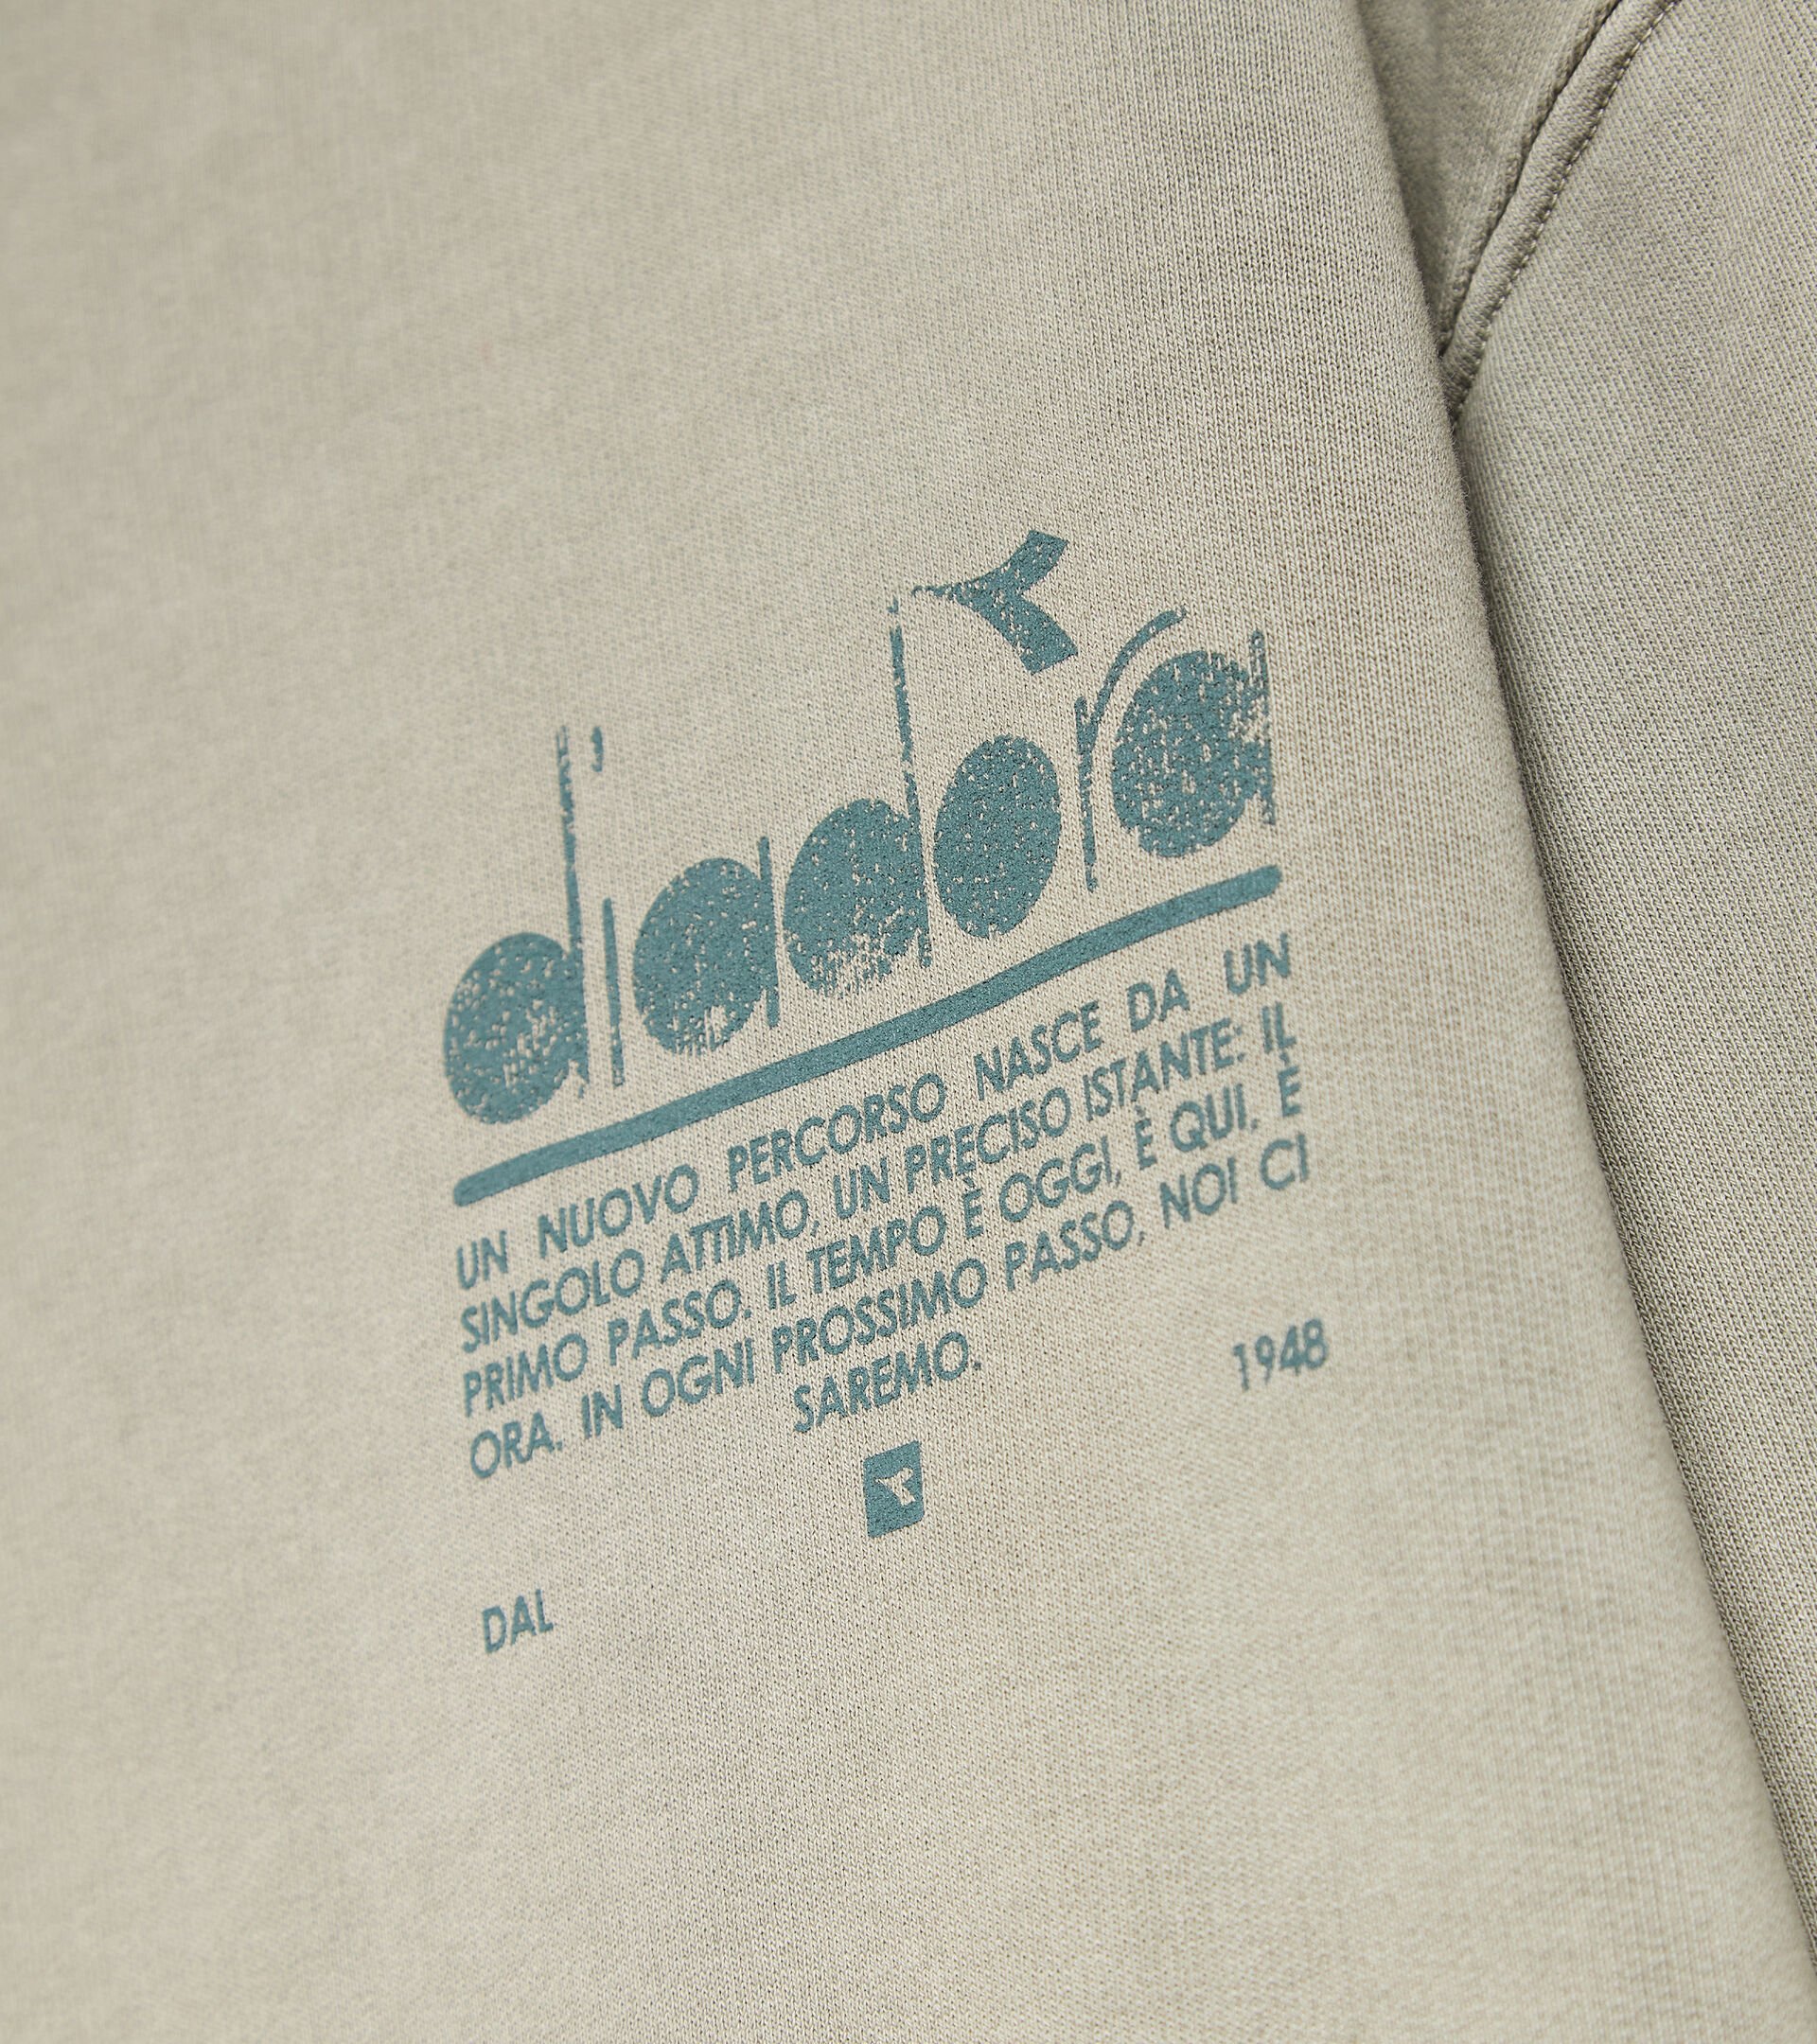 Sweatshirt mit Kapuze aus Bio-Baumwolle - Unisex HOODIE MANIFESTO PALETTE SHADOW - Diadora